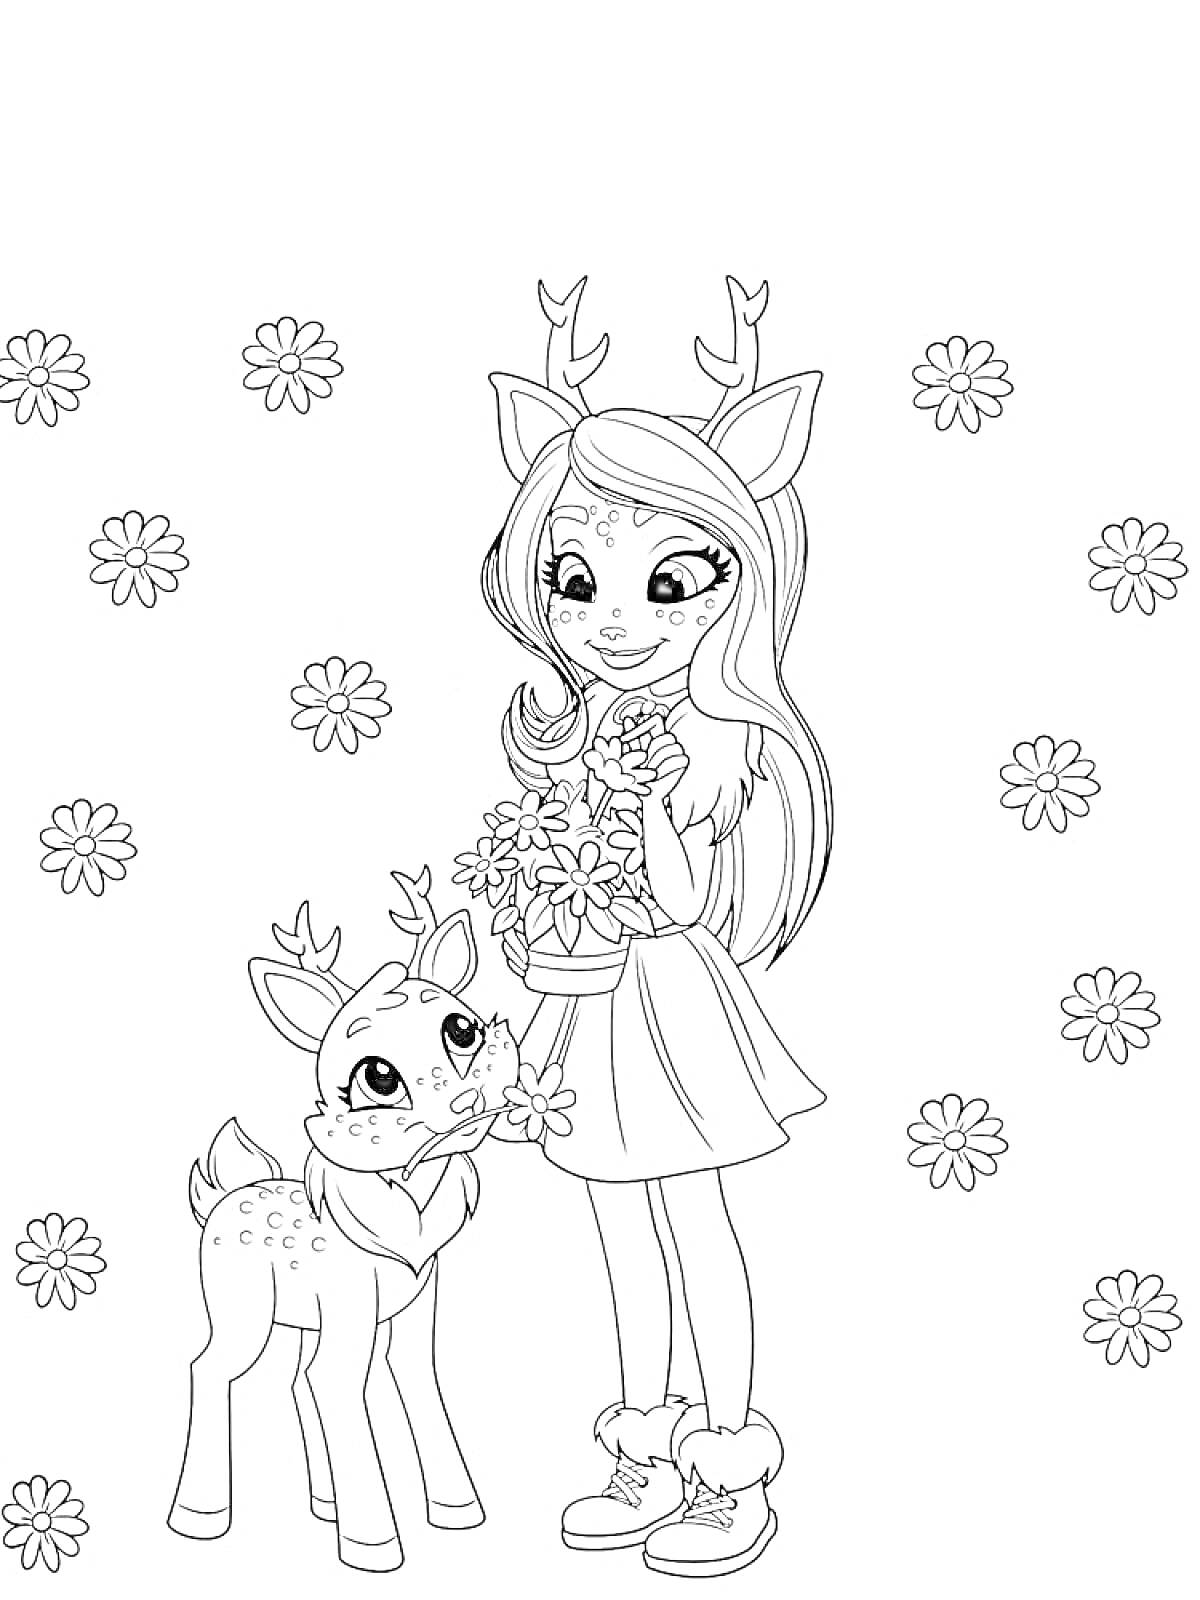 Девочка-олень с букетом цветов и олененок на фоне цветов.